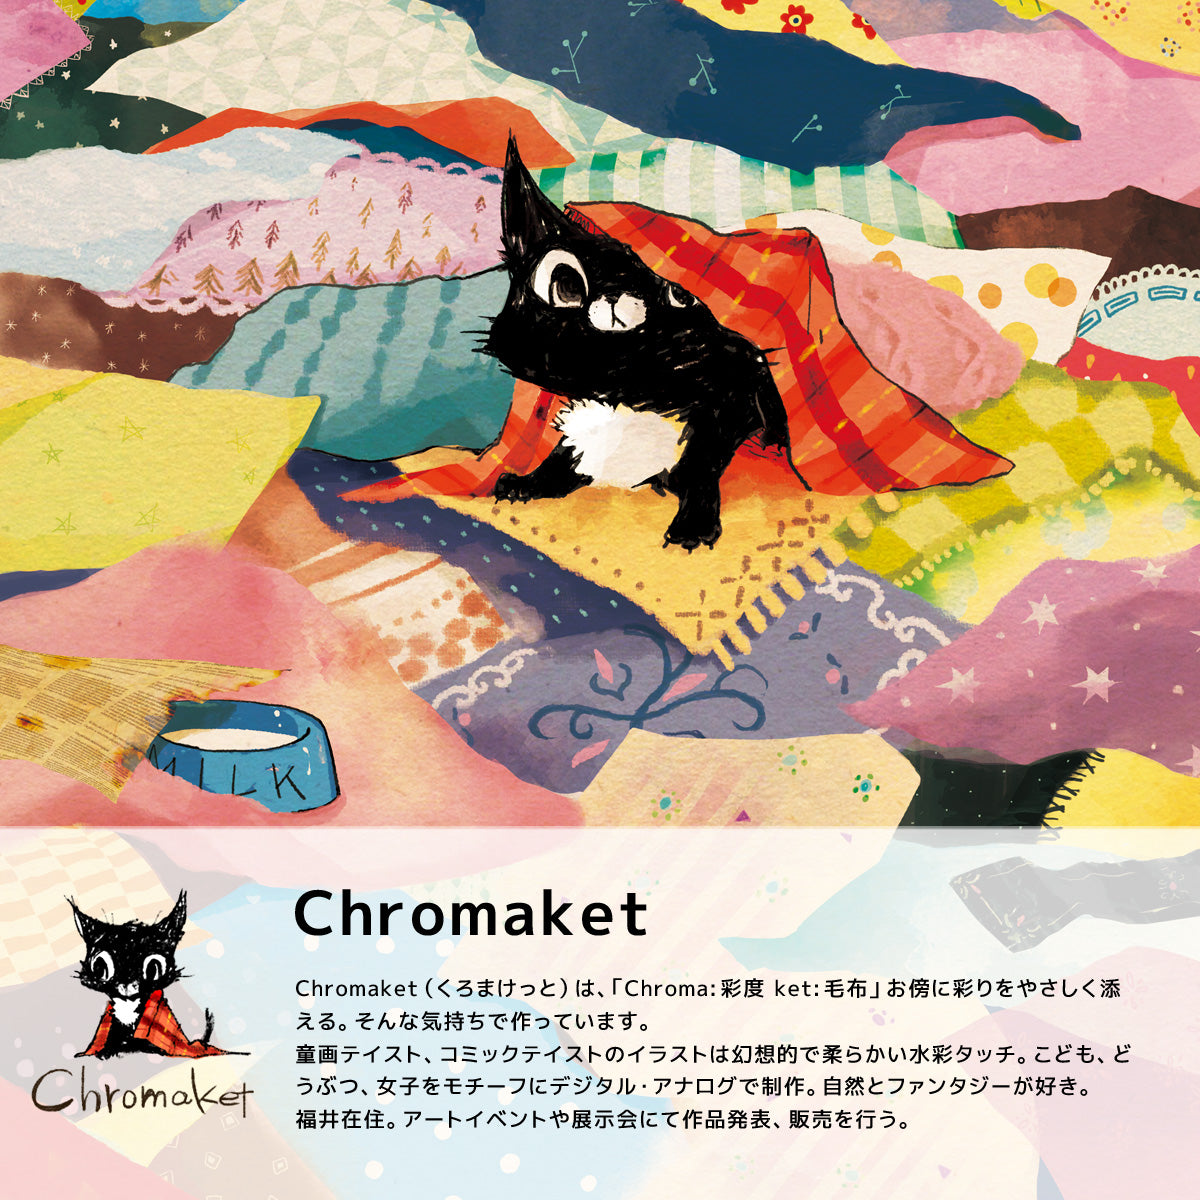 仁子デザイン、ChromaketブランドのiMacbookケース